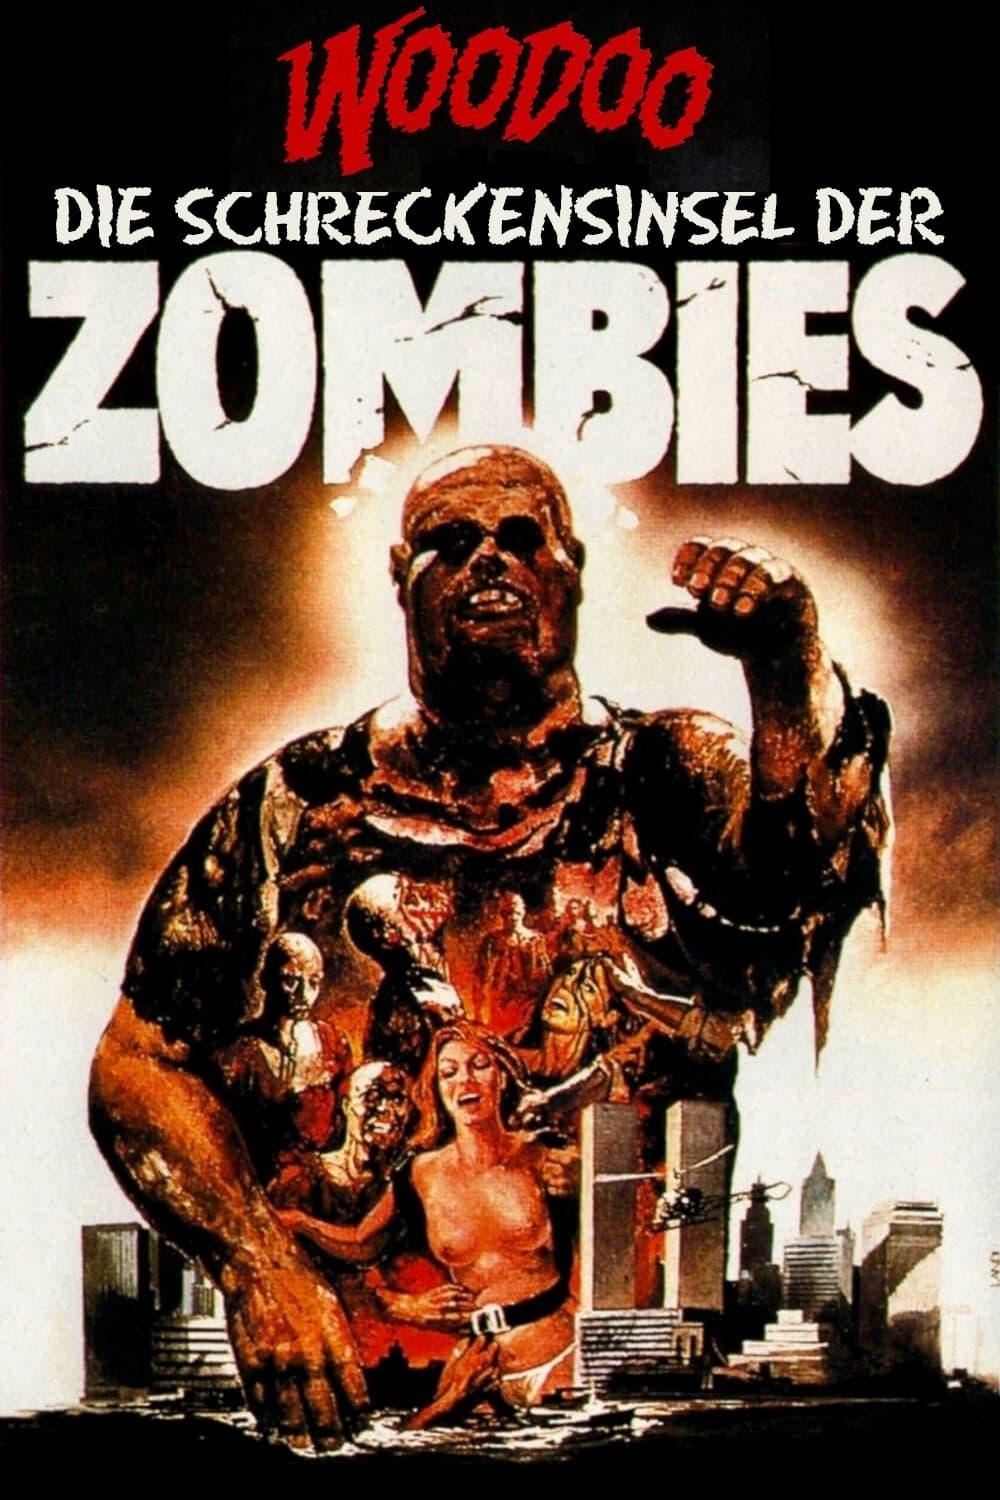 Woodoo - Die Schreckensinsel der Zombies poster